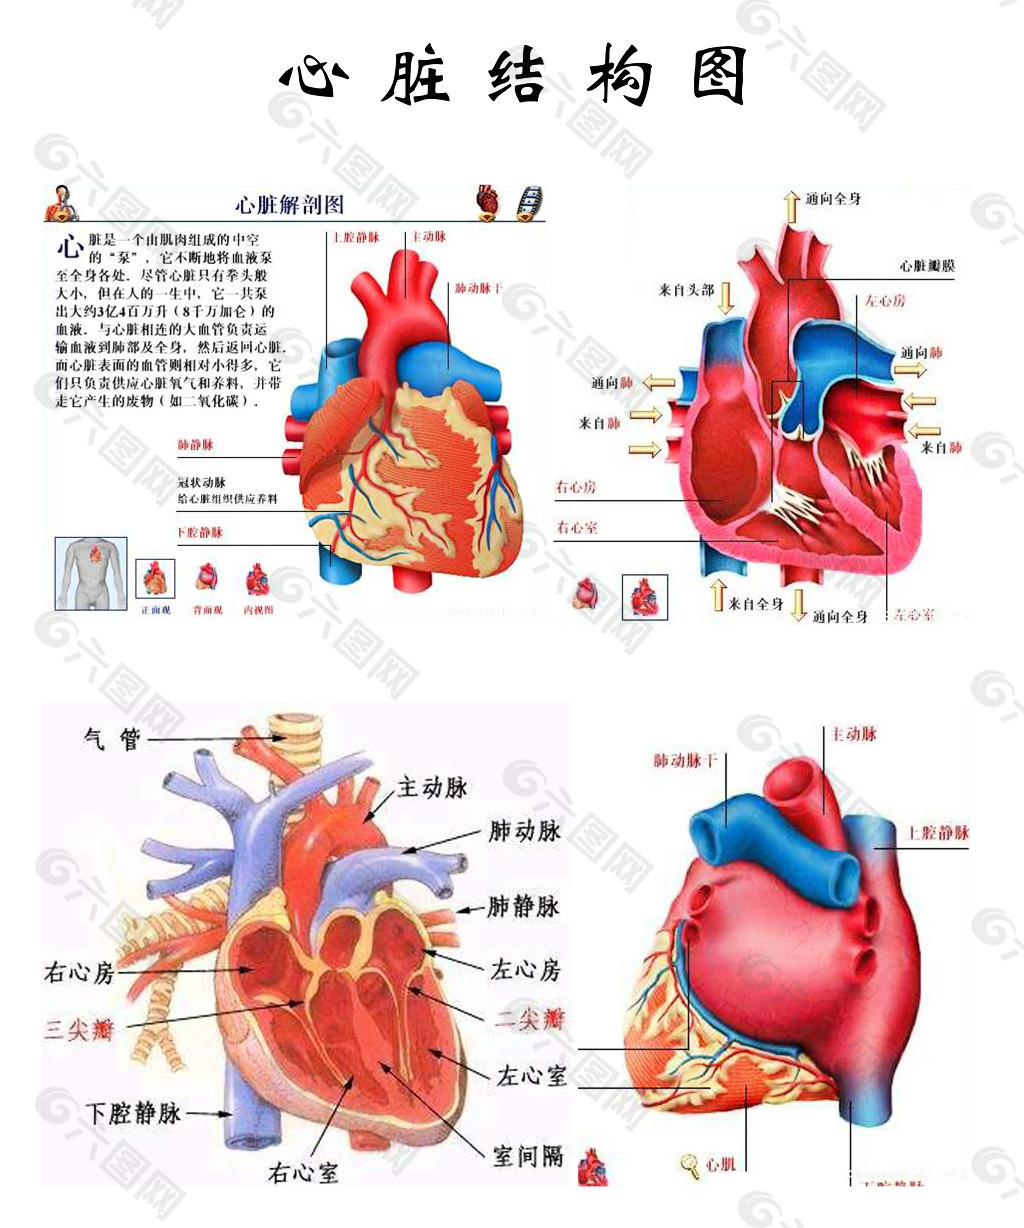 心脏结构